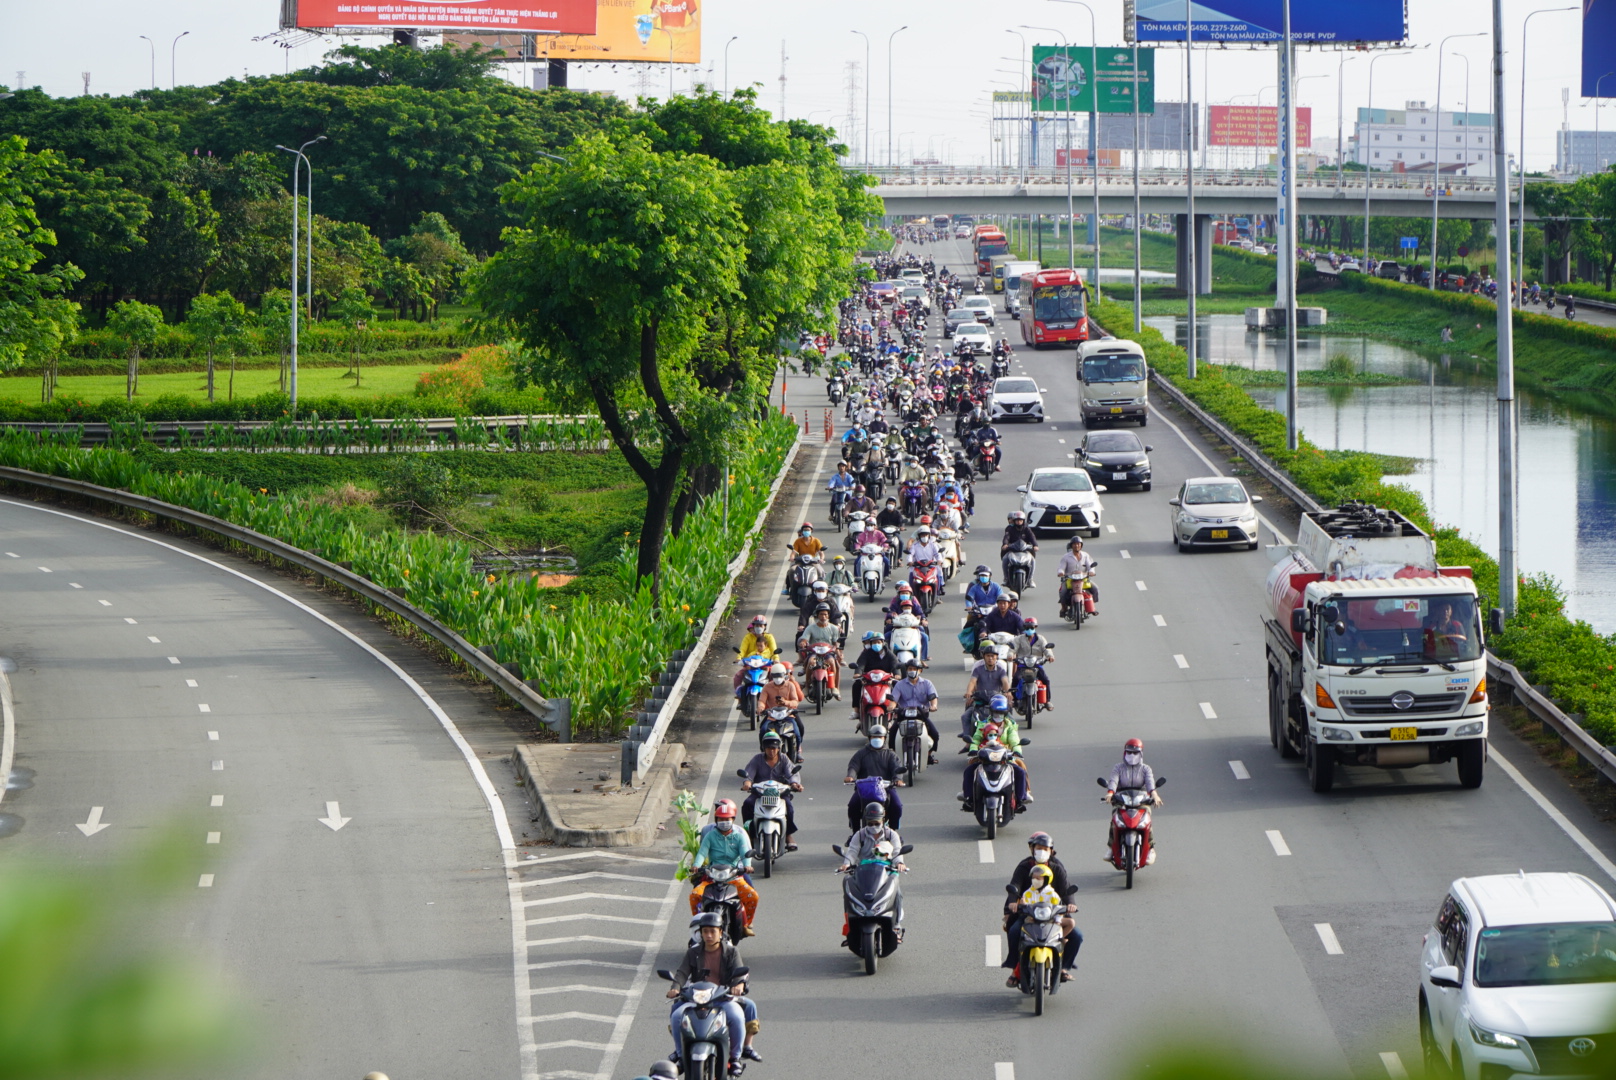 Tương tự, tại Quốc Lộ 1A - cửa ngõ phía Tây thành phố giao thông khá thông thoáng dù lượng phương tiện tăng cao do nhiều người dân từ thành phố về quê nghỉ lễ.